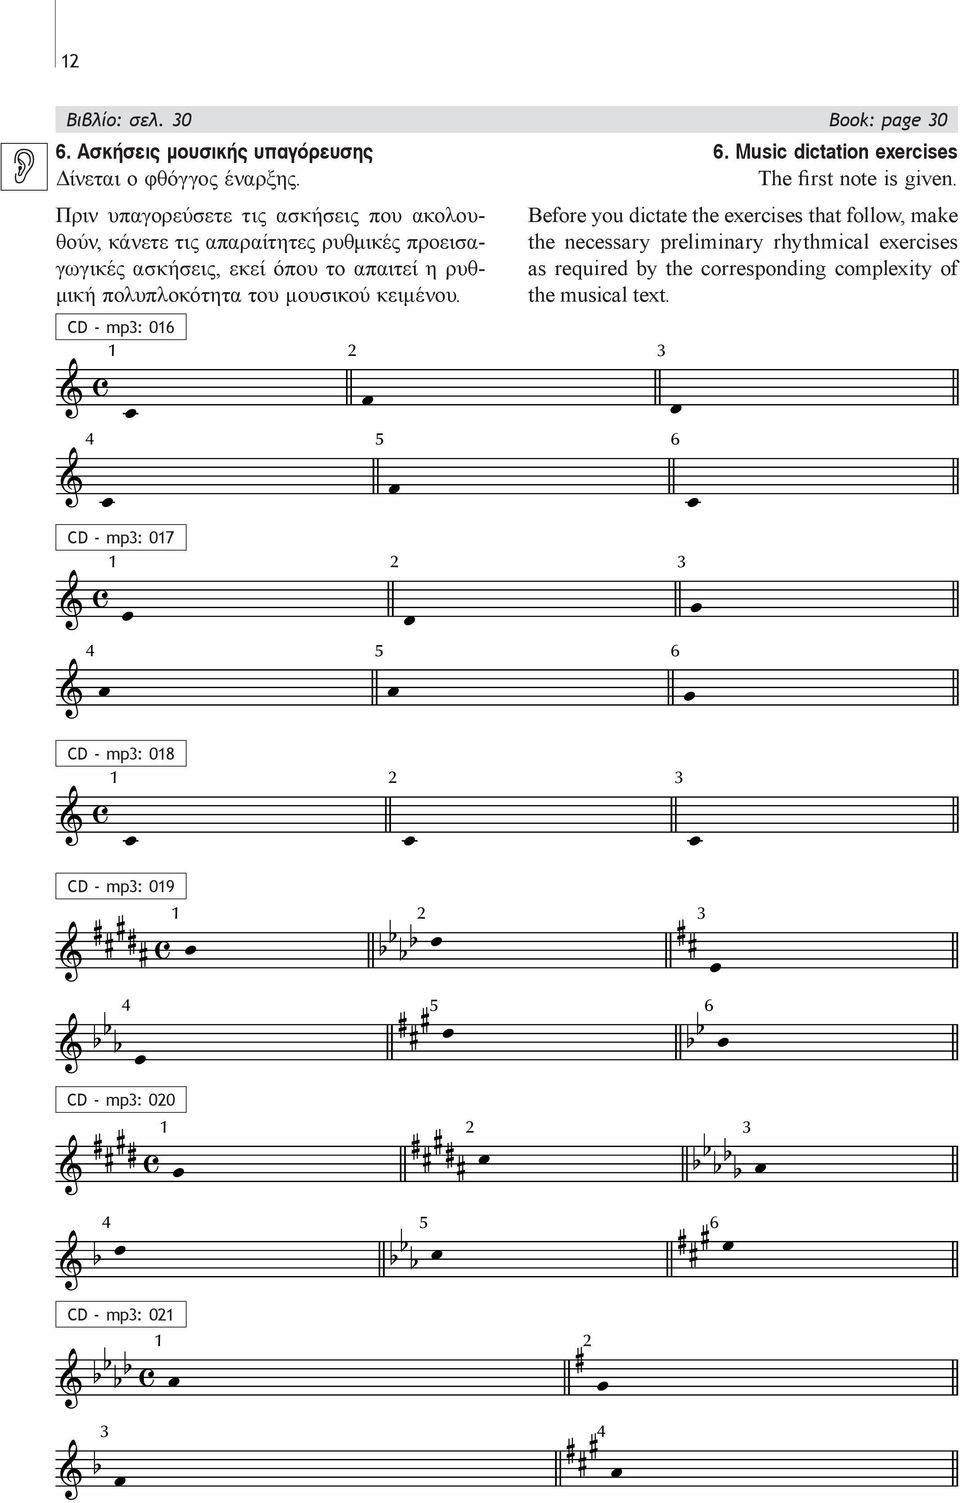 πολυπλοκότητα του μουσικού κειμένου. CD - mp: 0 CD - mp: 07. Music dictation exercises The first note is given.